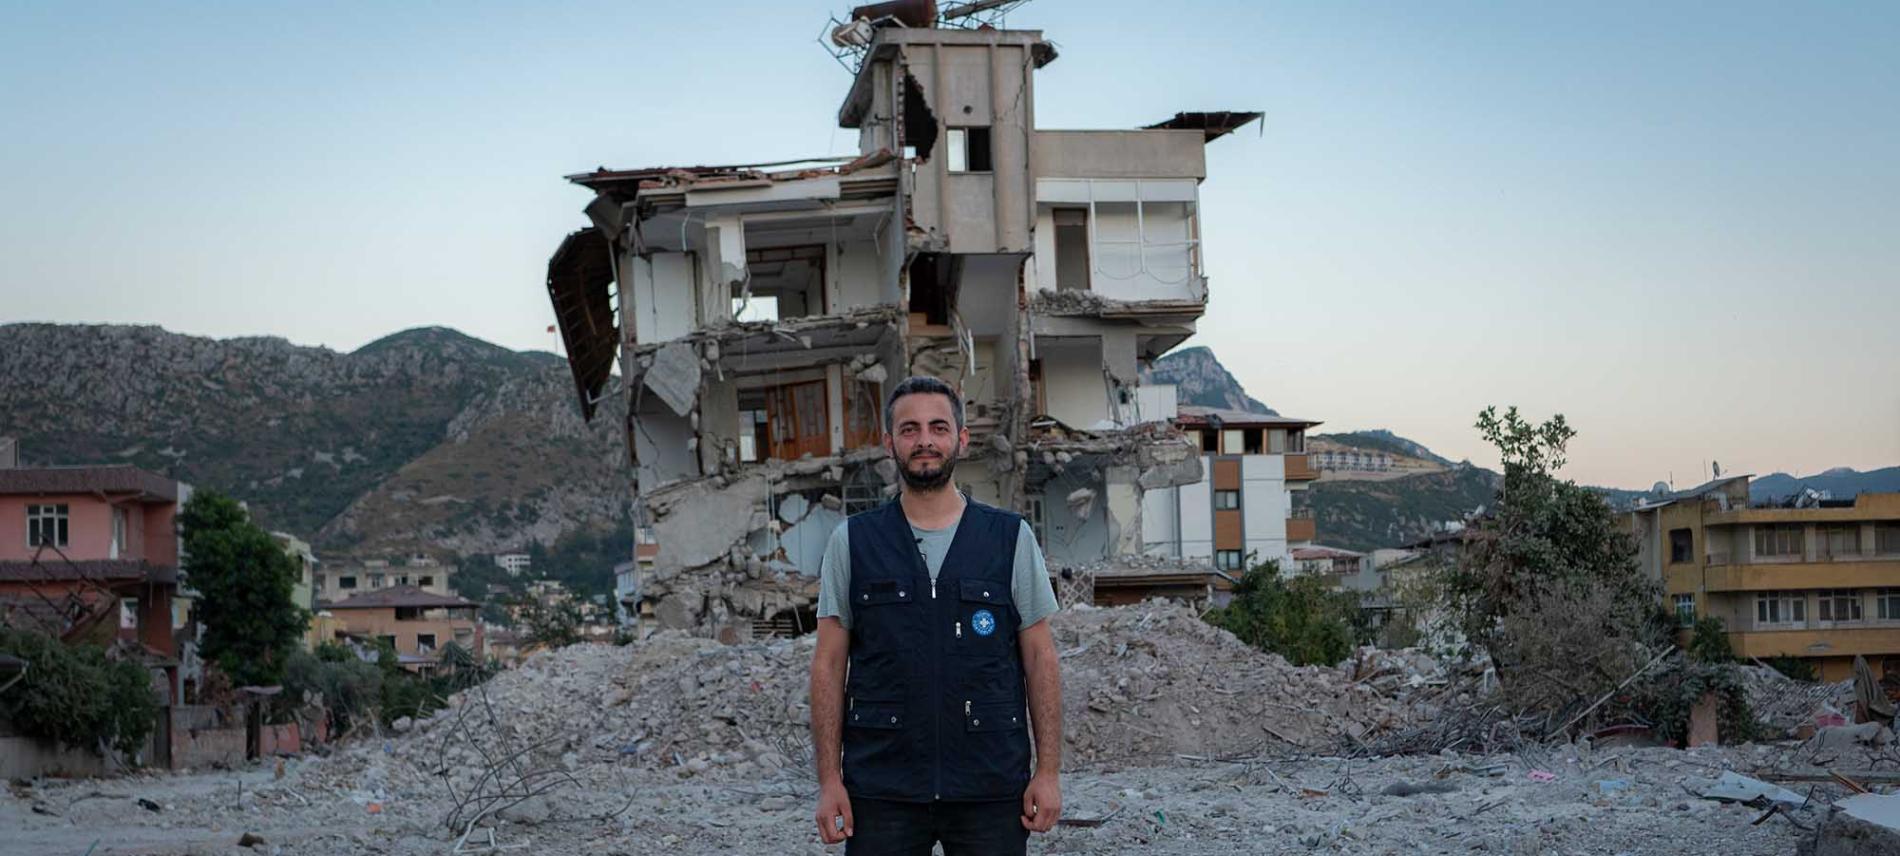 Ärzte der Welt-Mitarbeiter vor einem eingestürzten Haus in Hatay. Foto: Huseyin Aldemir